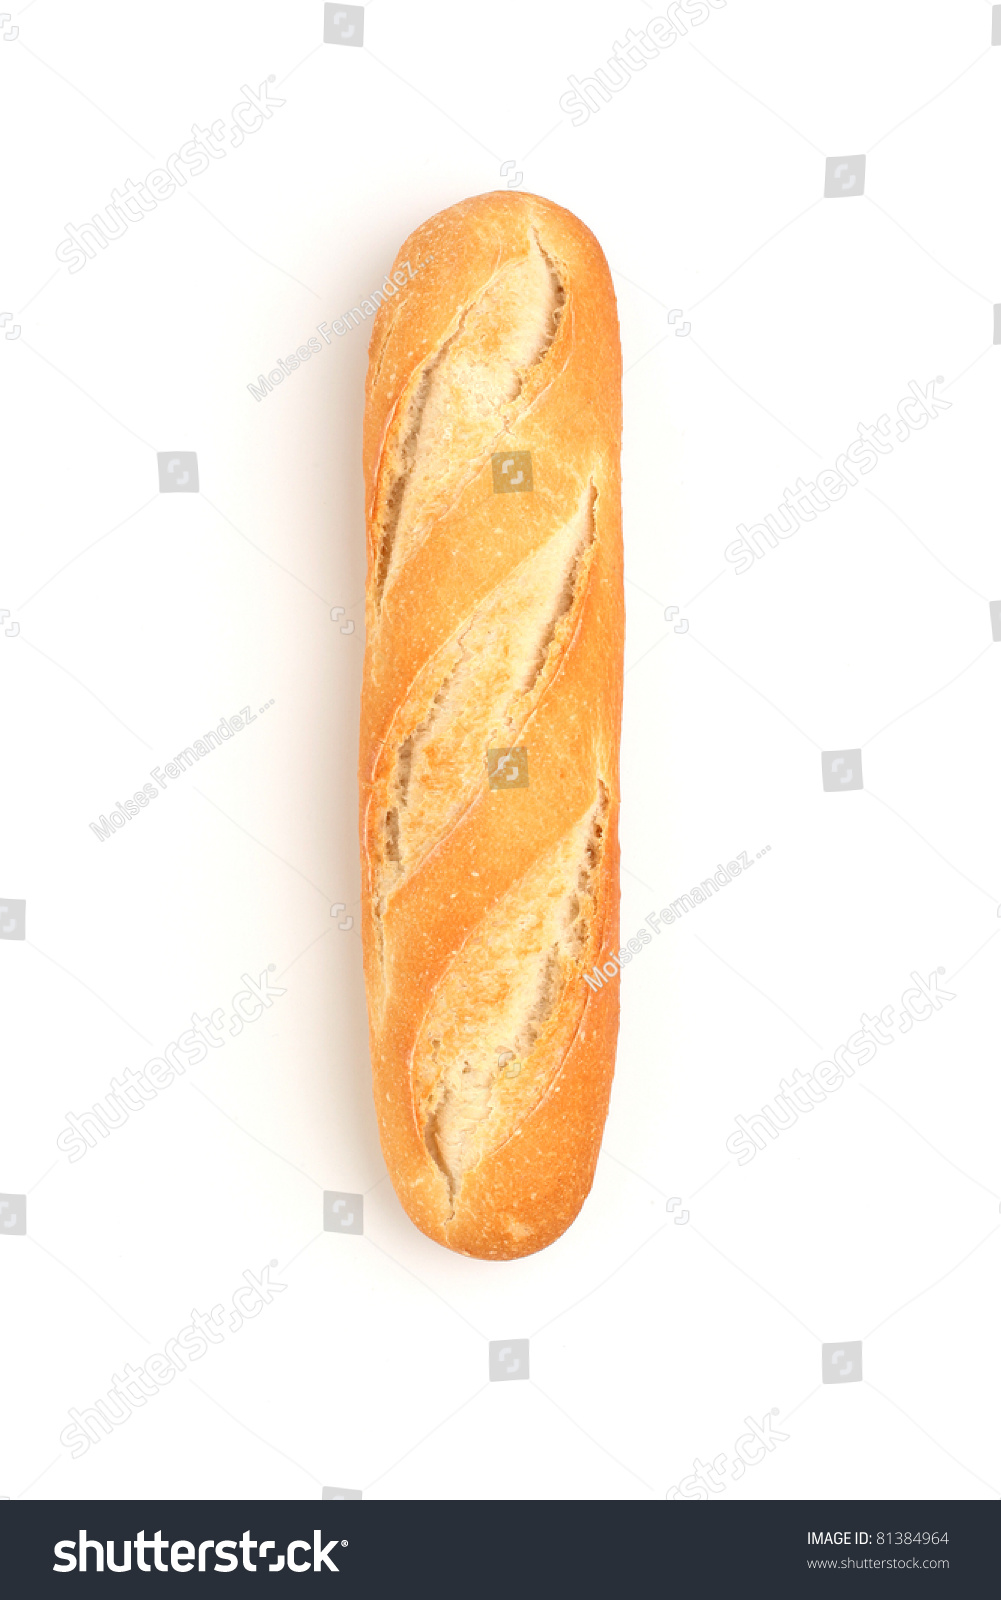 Piece of bread #81384964